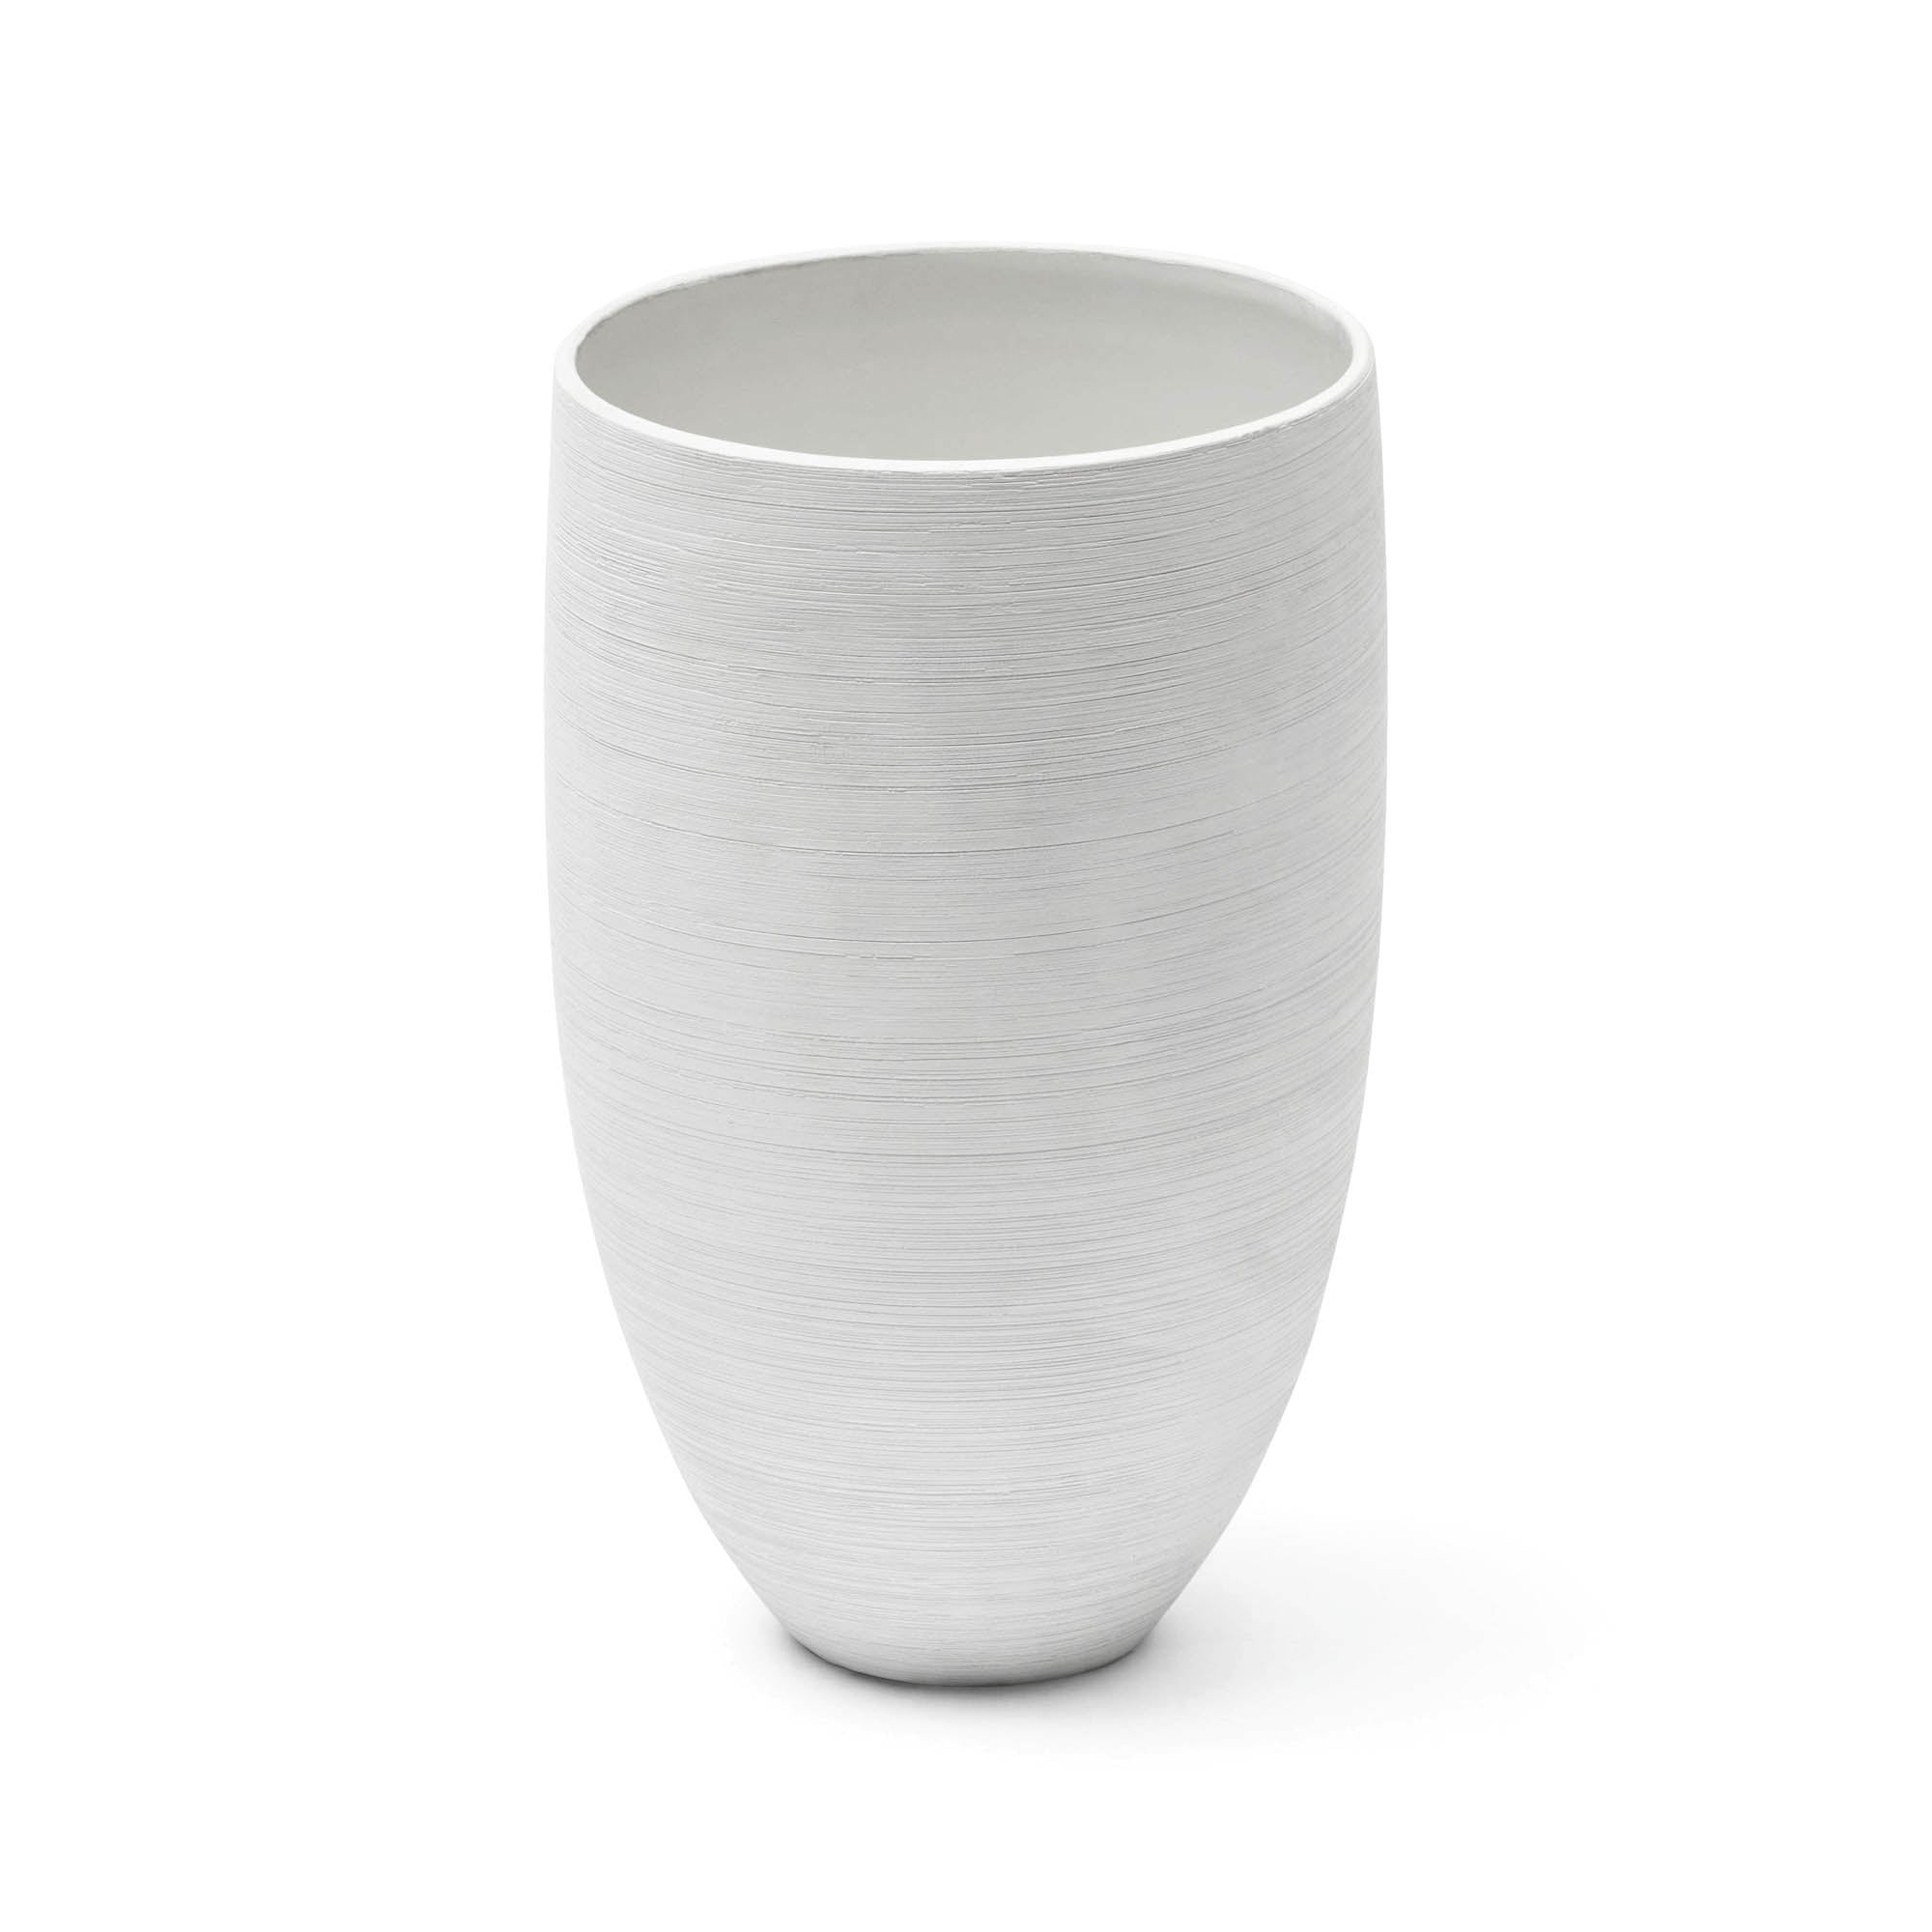 Kiri Vase White Small